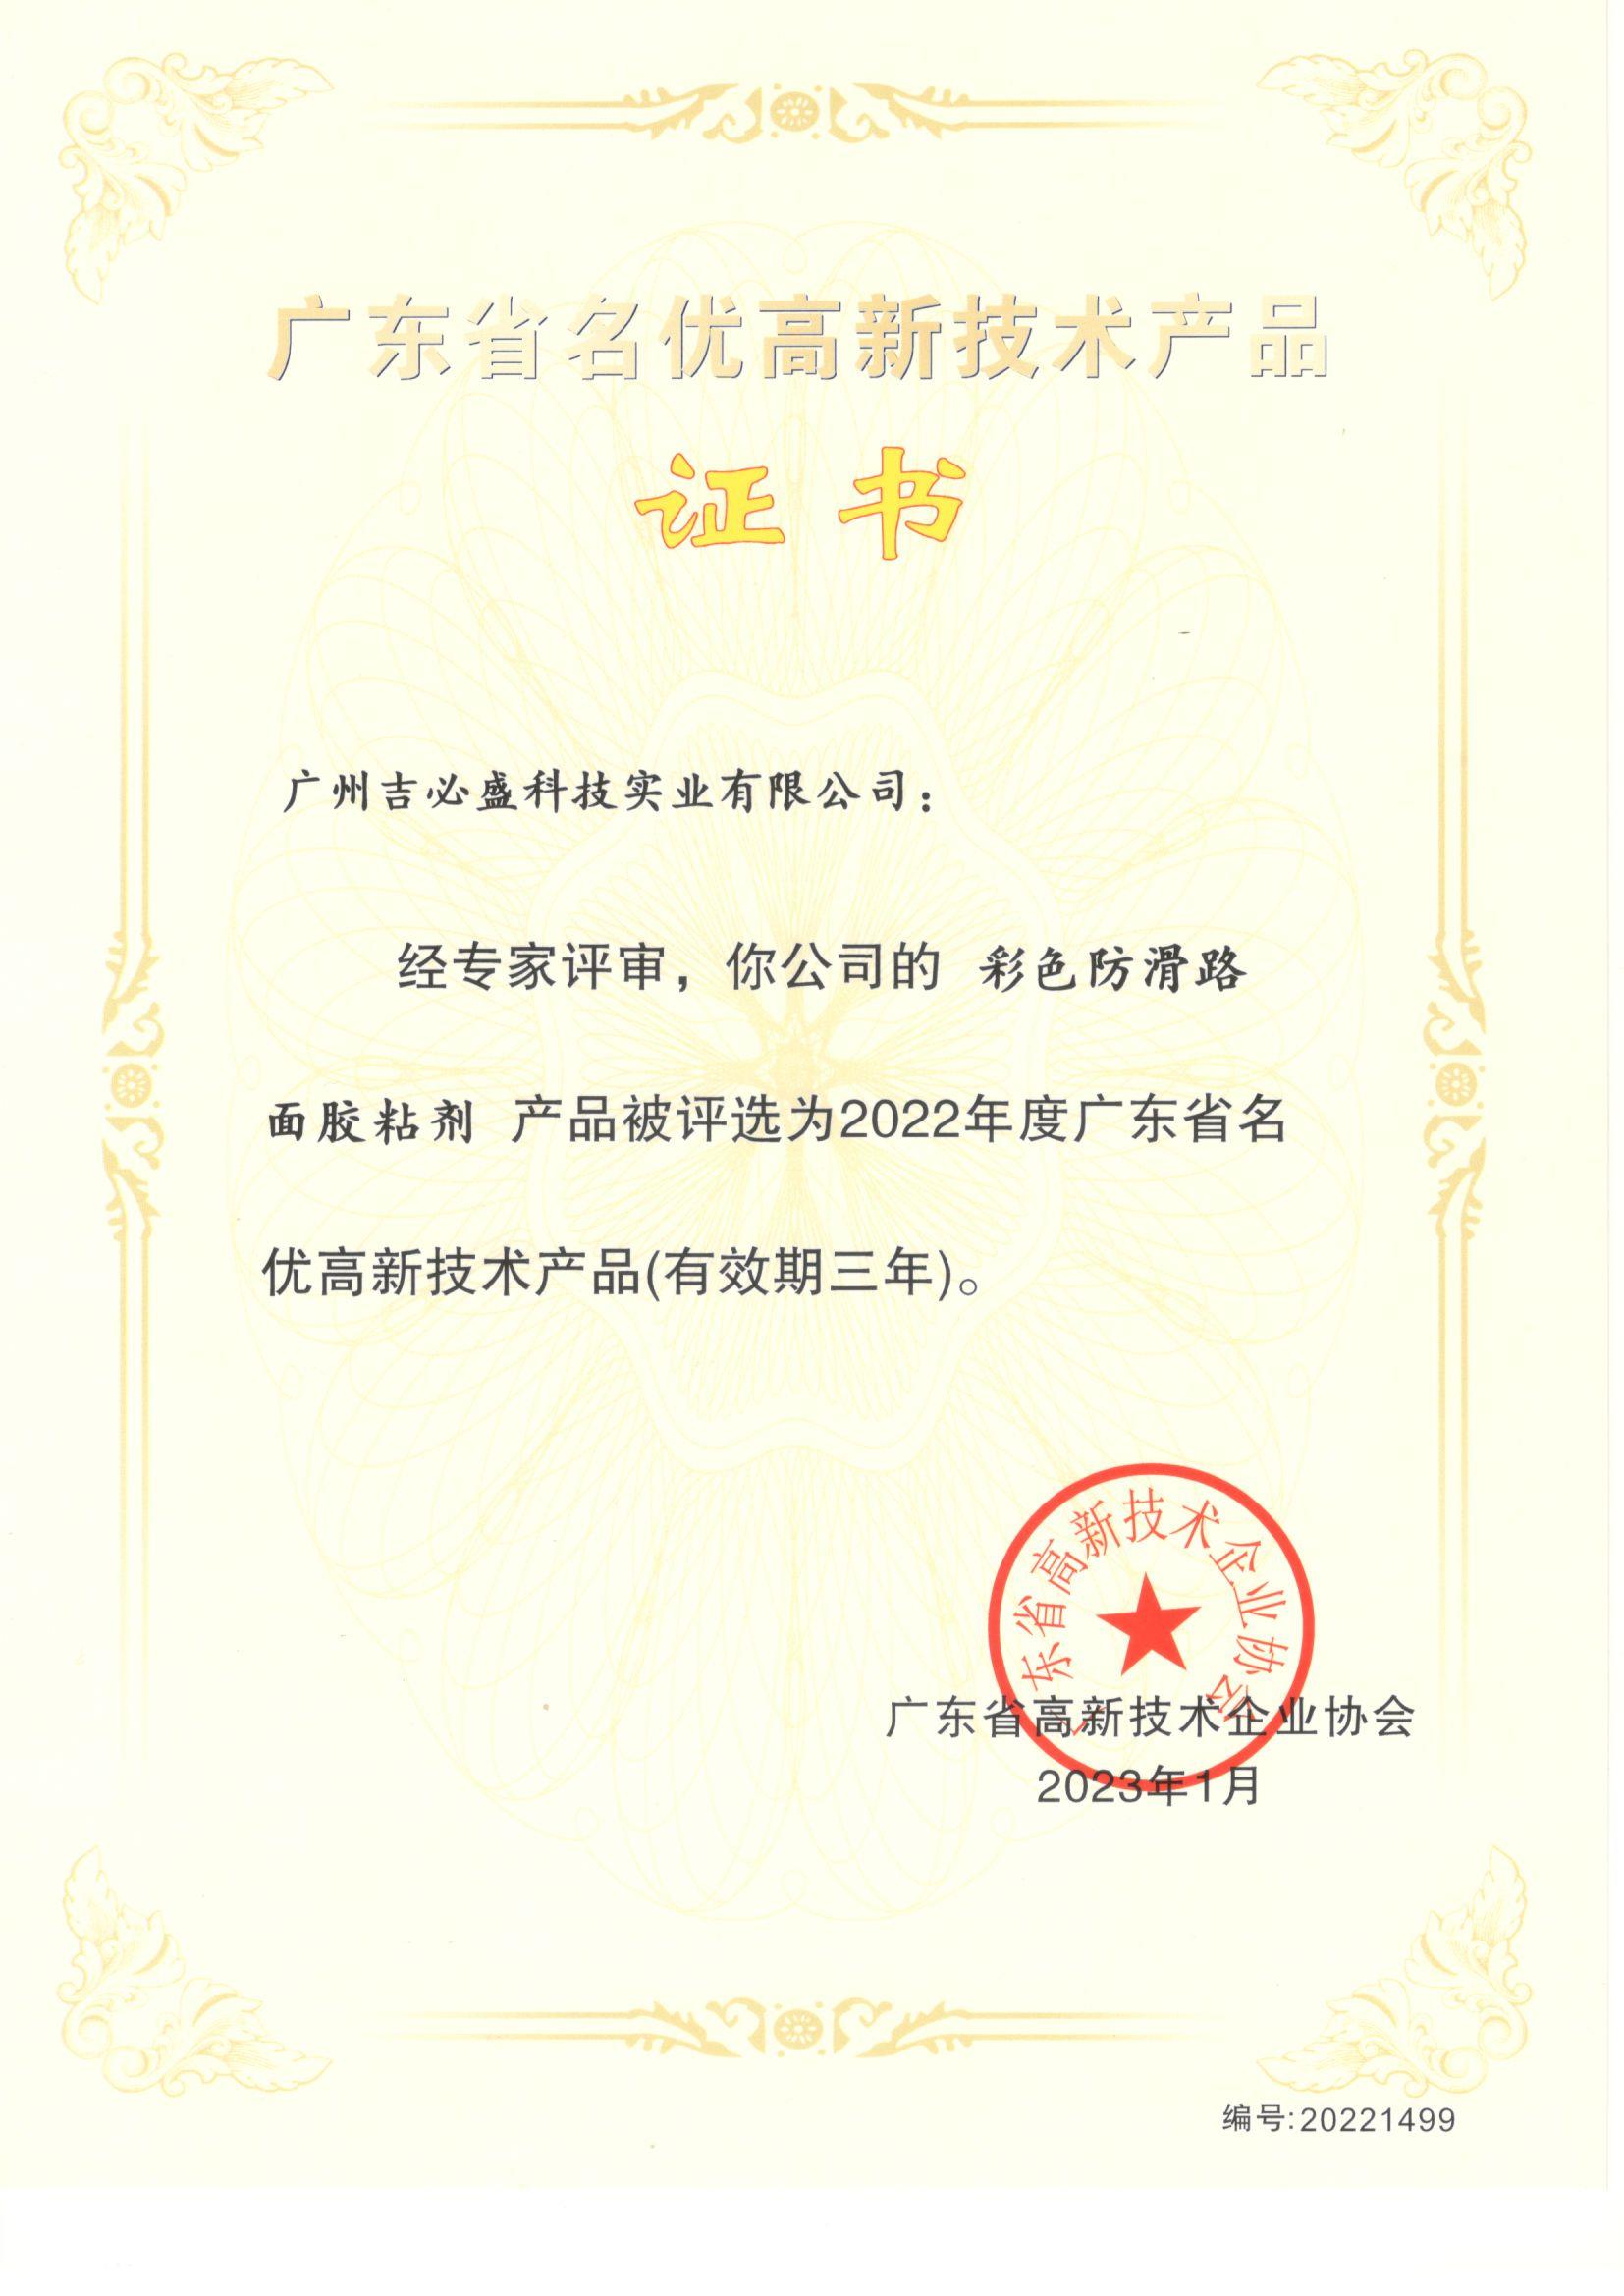 热烈祝贺我司彩色防滑路面胶粘剂获评为广东省名优高新技术产品